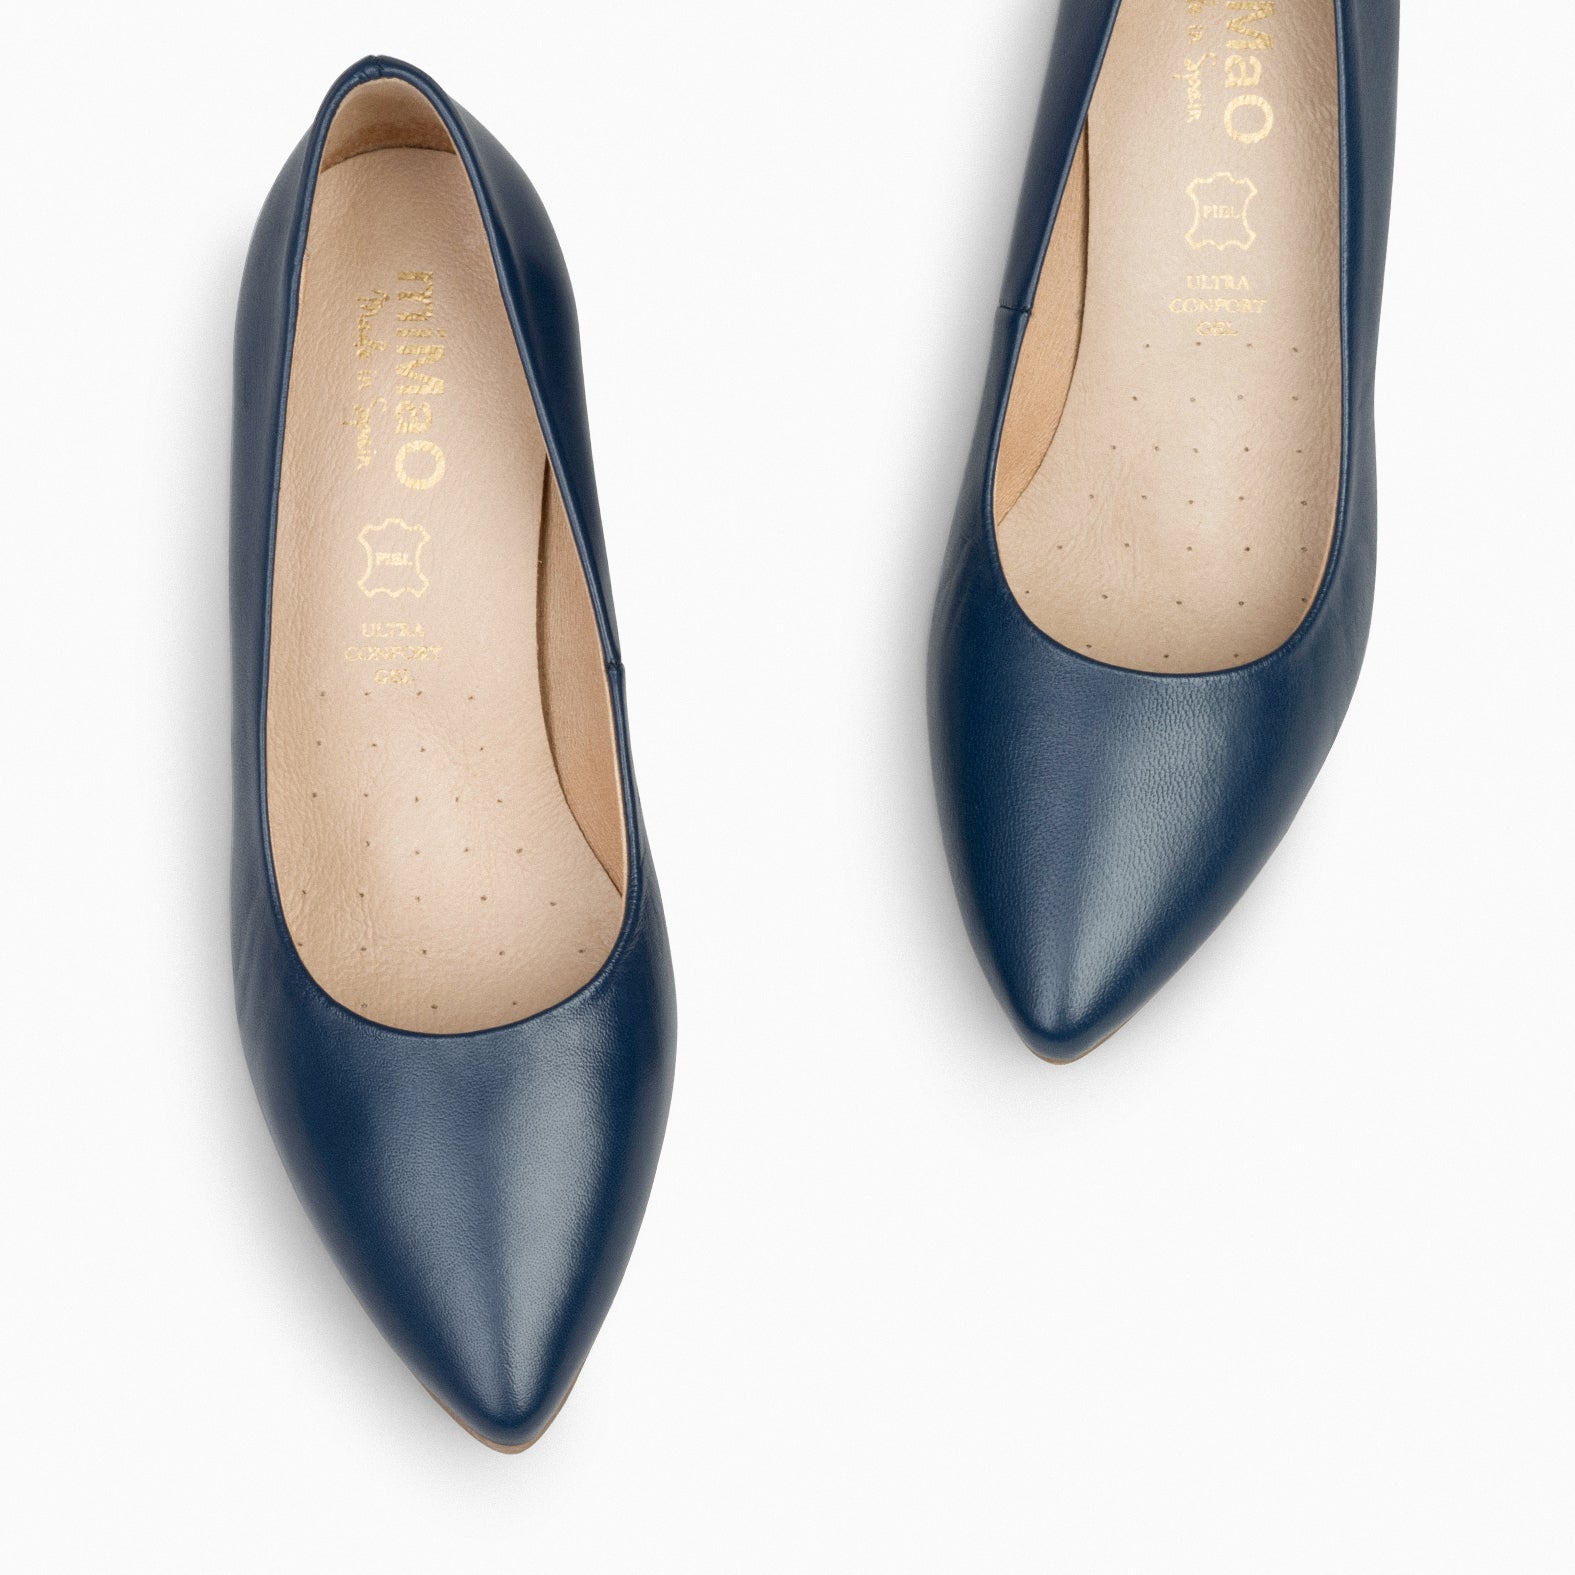 URBAN S SALON – NAVY nappa leather mid heel